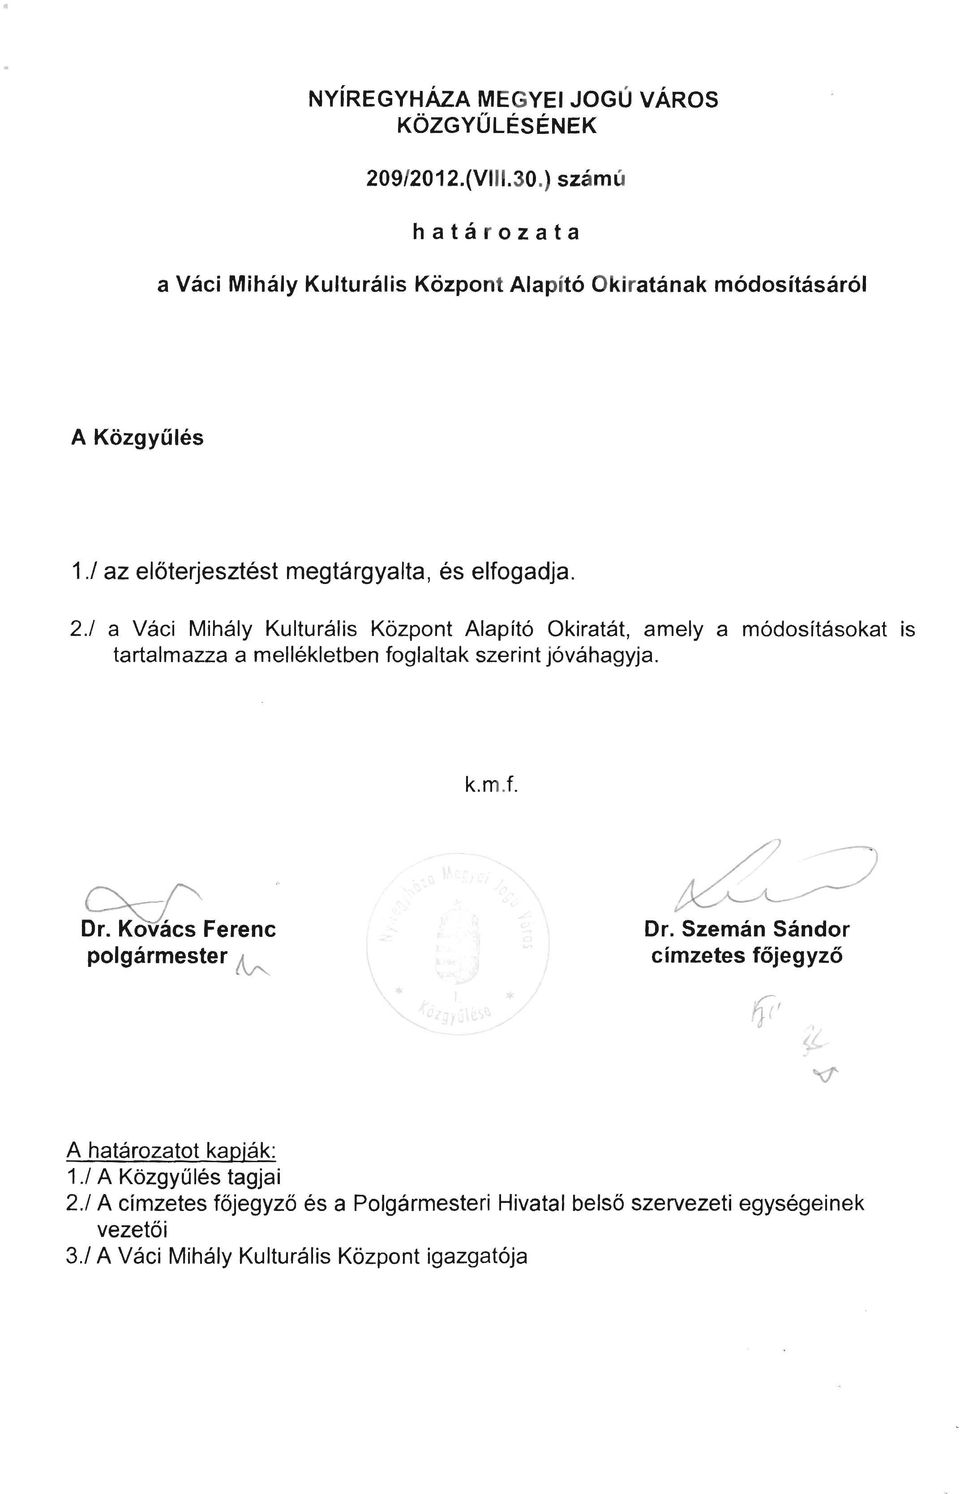 / a Váci Mihály Kulturális Központ Alapító Okiratát, amely a módosításokat is tartalmazza a mellékletben foglaltak szerint jóváhagyja. k. m.t. ~Ferenc Dr.